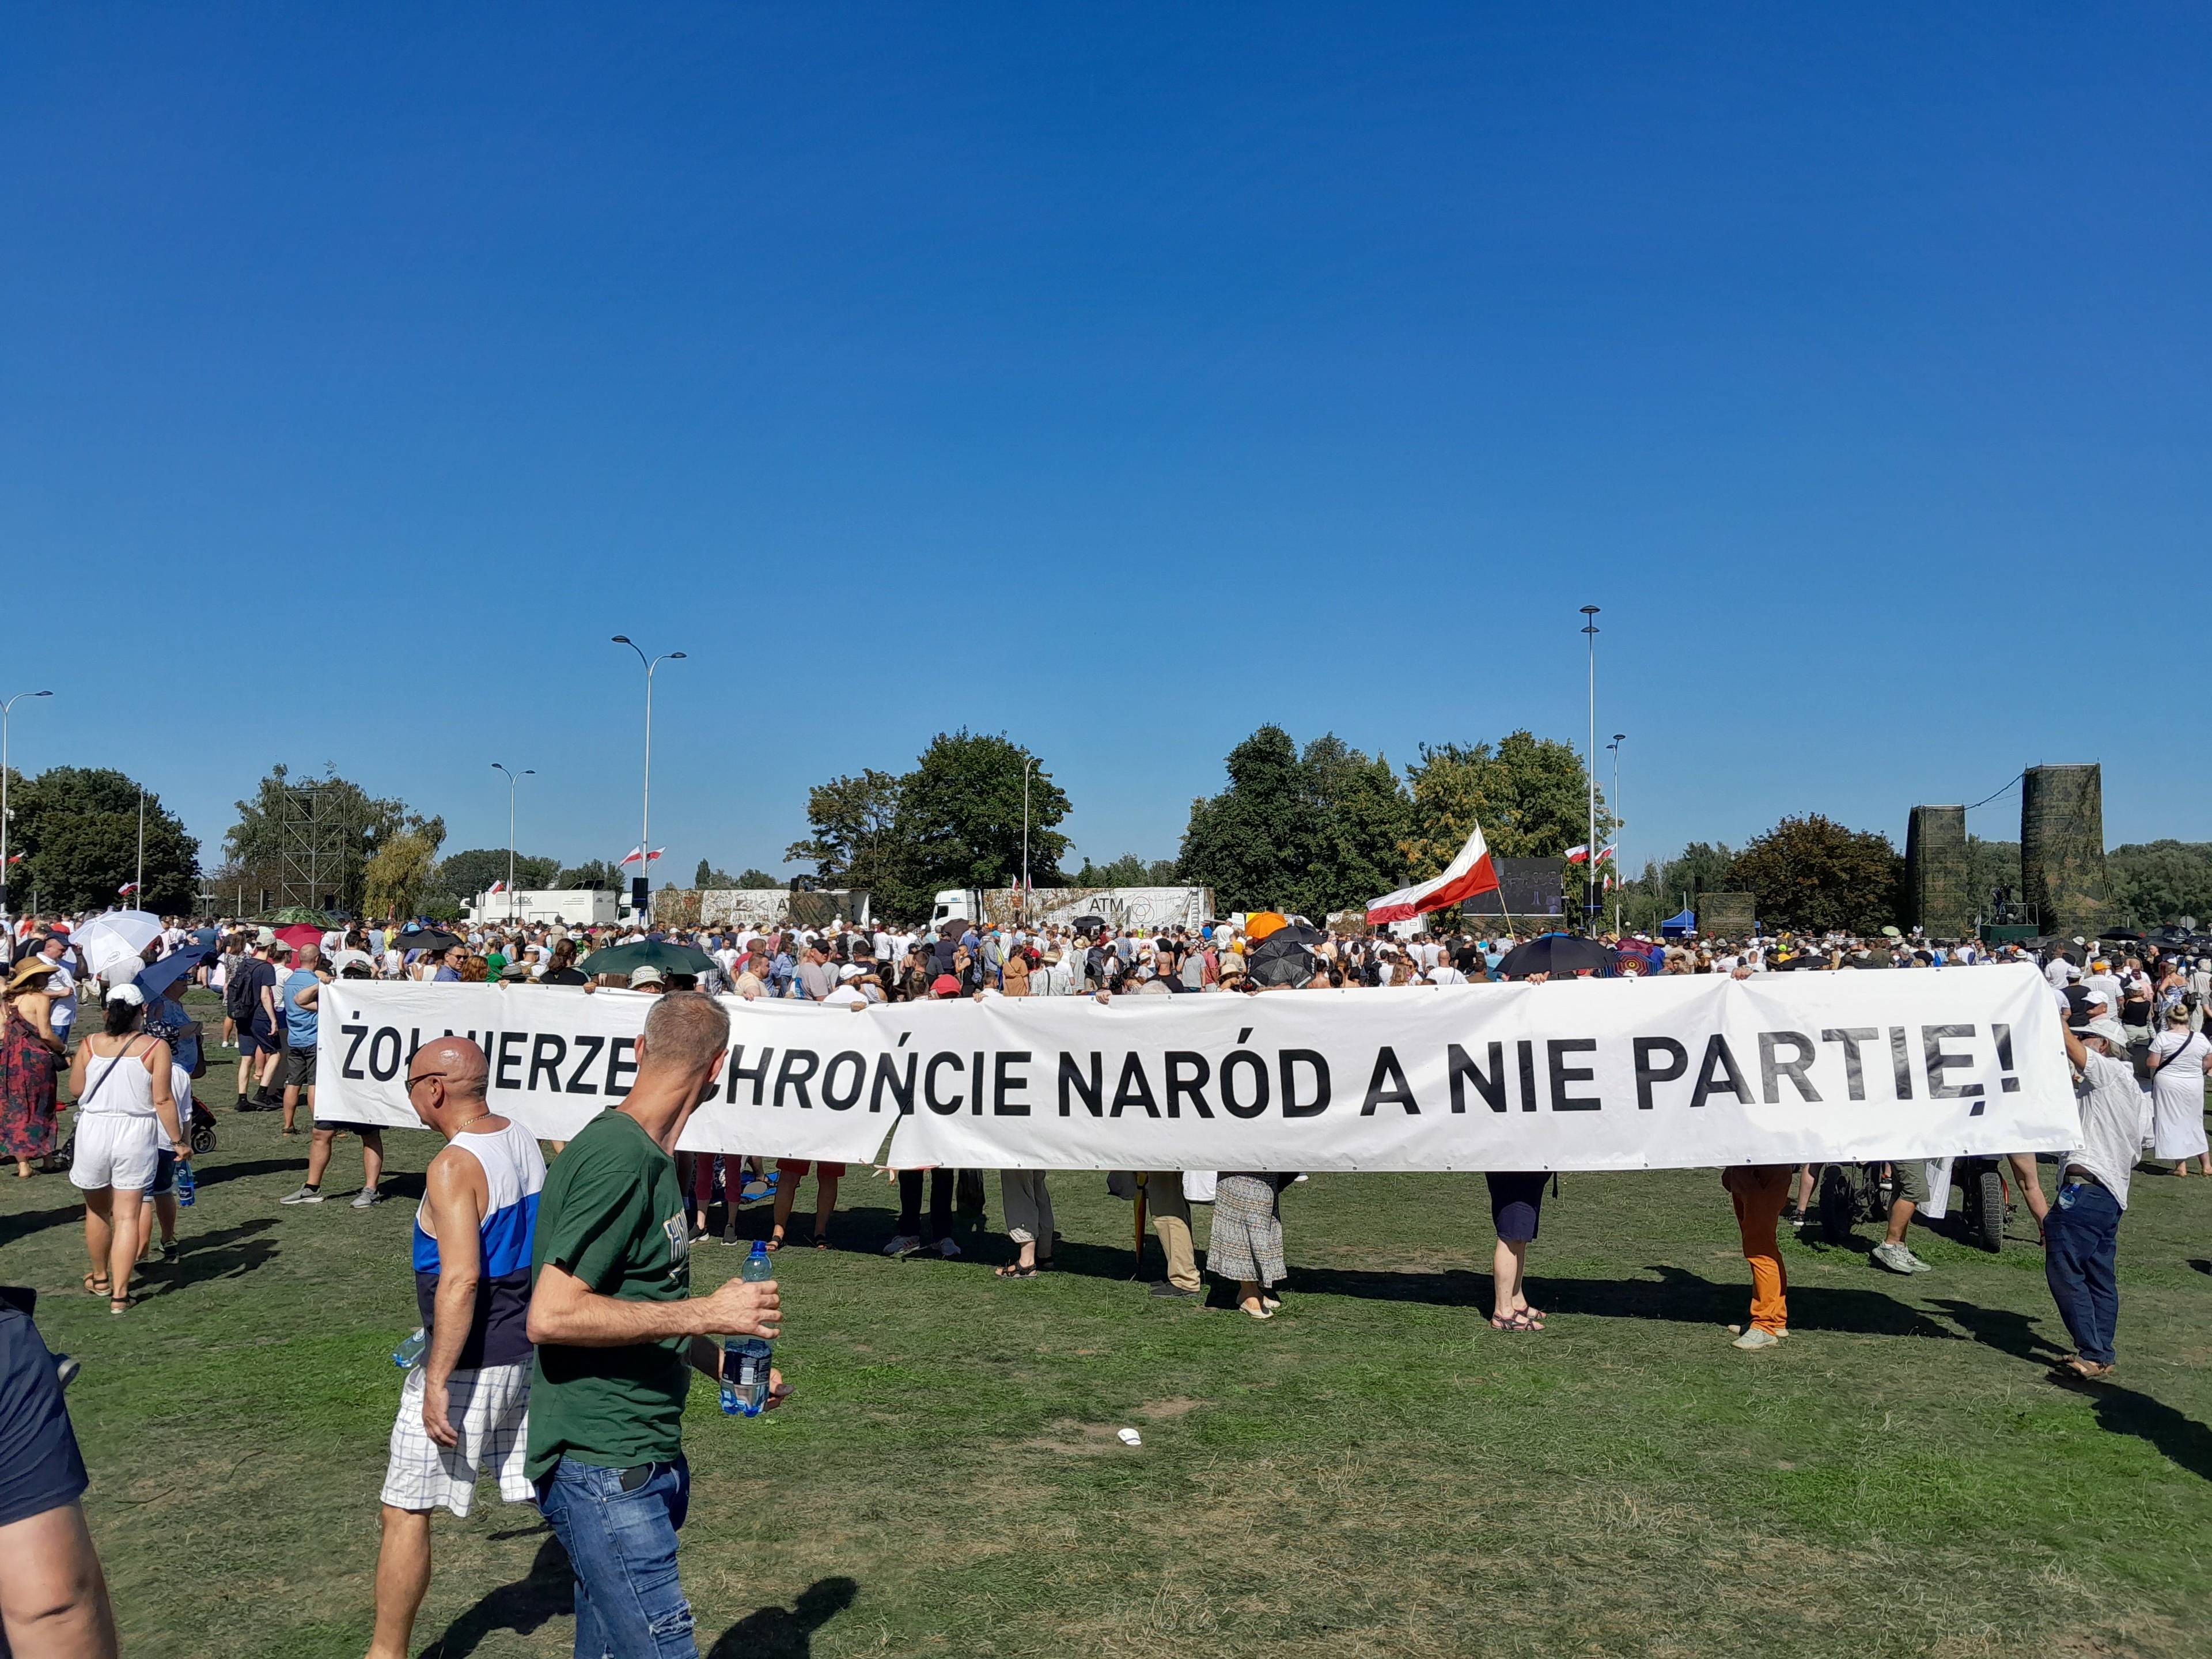 grupa osób trzyma transparent z napisem "żołnierze chrońcie naród a nie partię"